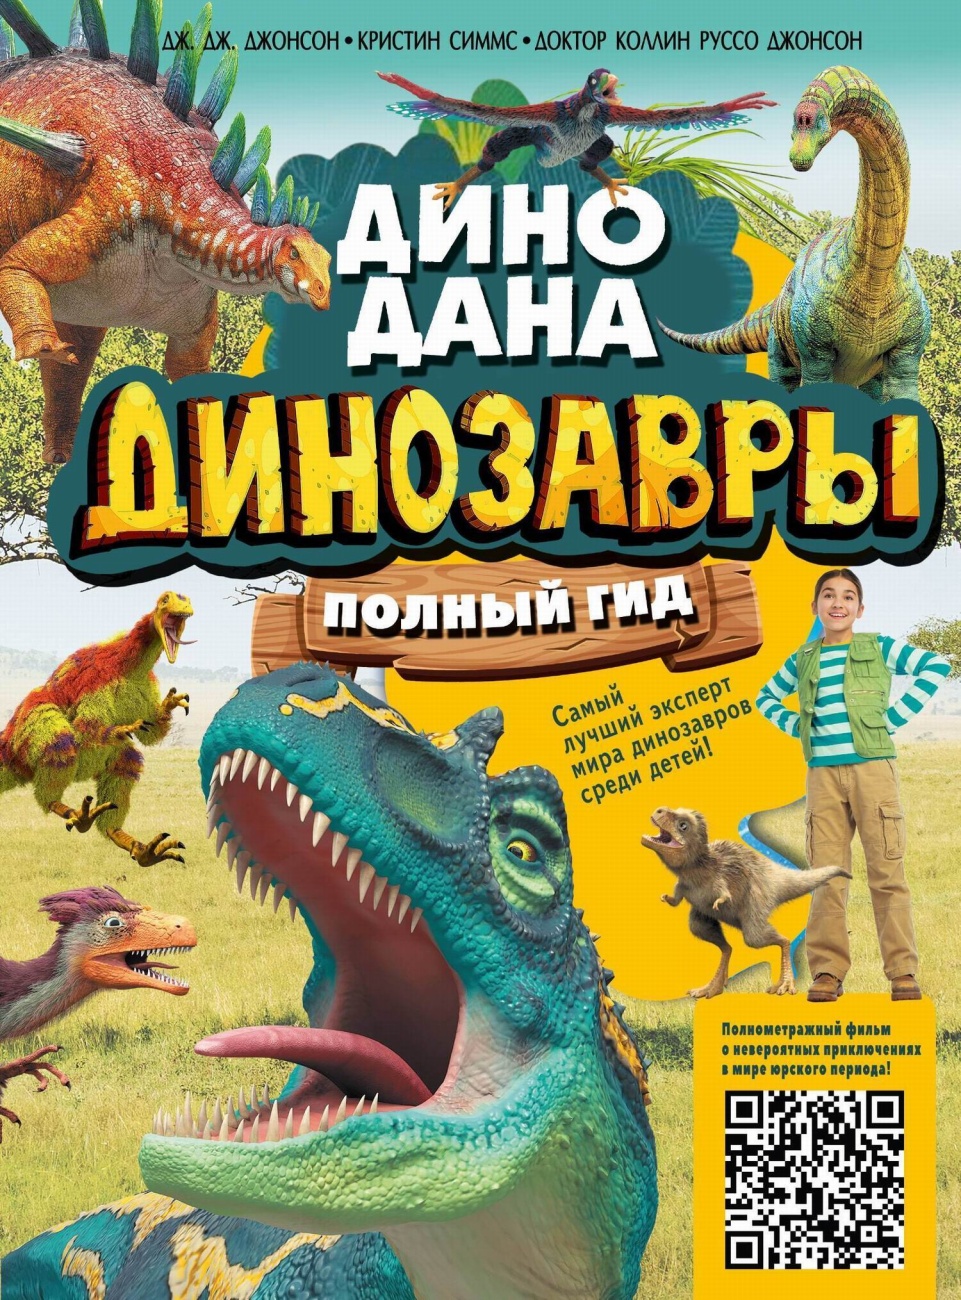 Книга АСТ Динозавры. Полный гид 138701-3